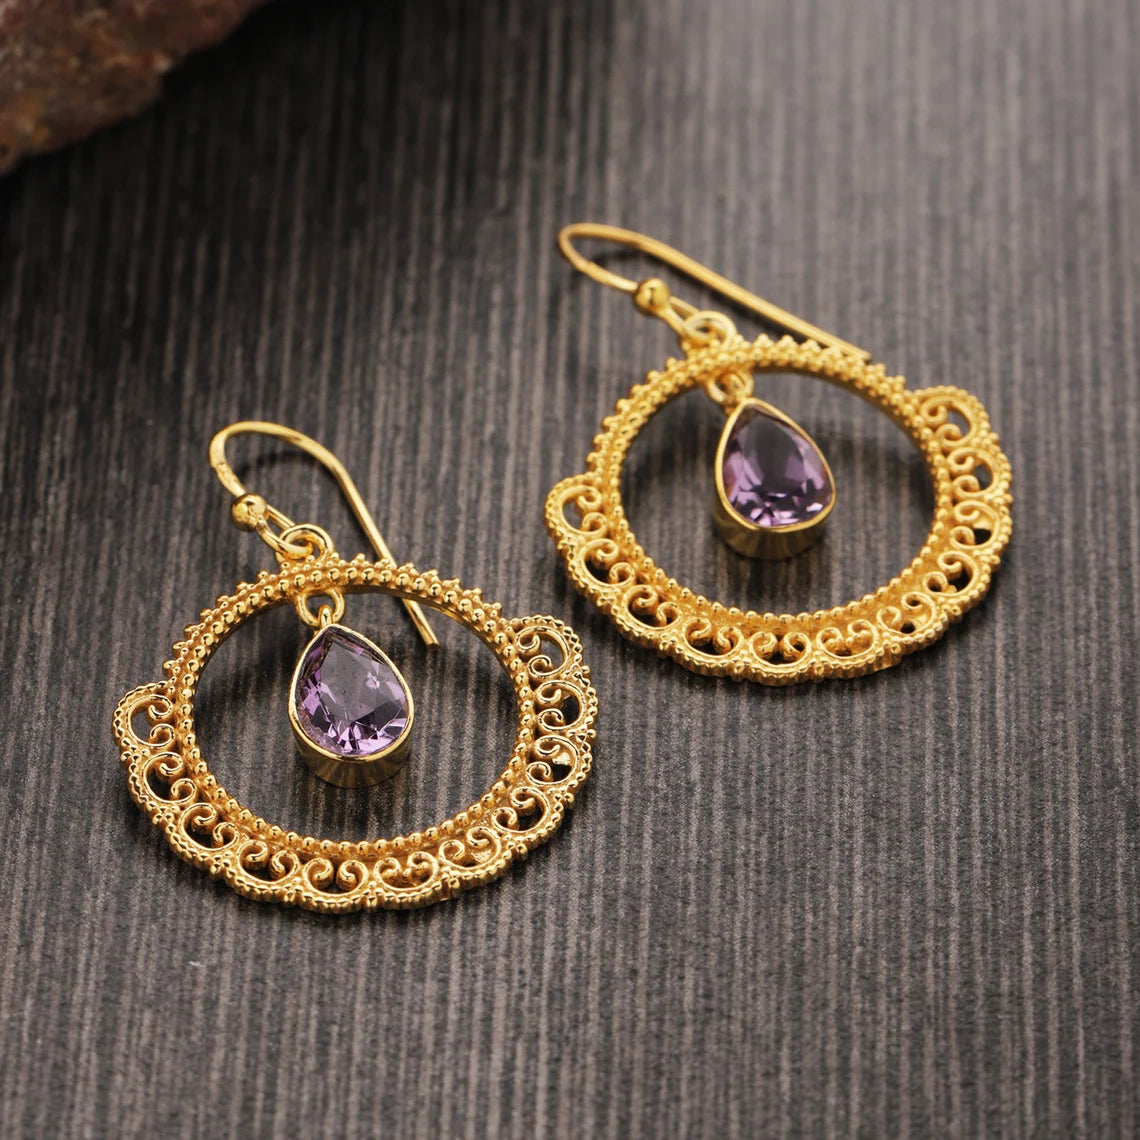 925 Silver Earrings with Gold Plated - Amethyst Earrings, February Birthstone, Purple Teardrop Designers Earrings, Amethyst Jewelry, Violet Statement Drops, Gift for women